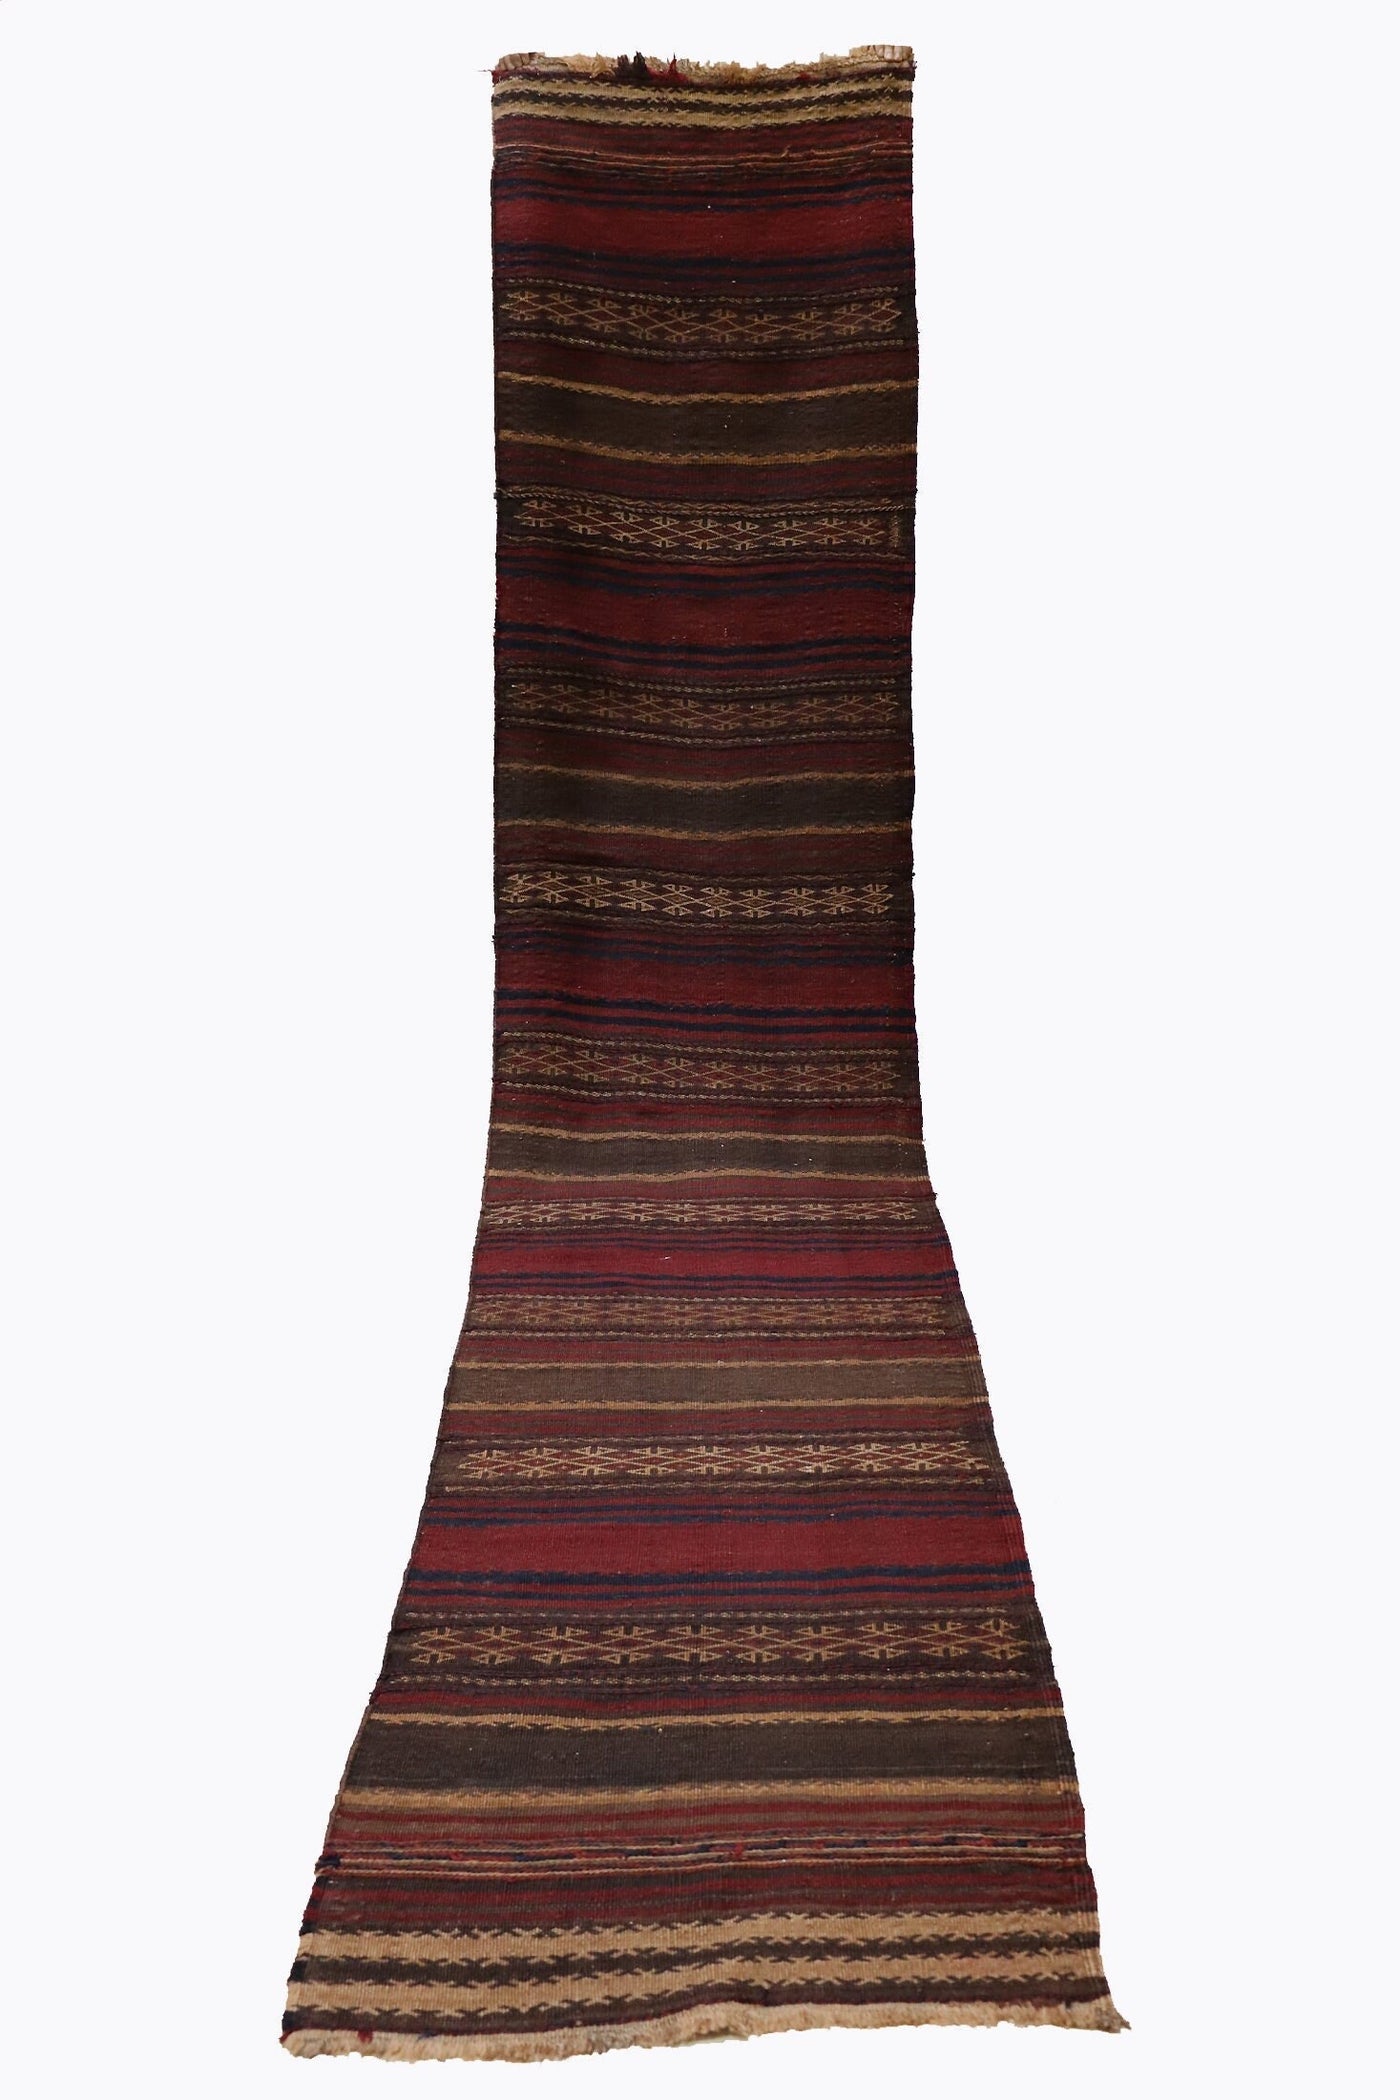 365x75 cm Antik orient handgewebte Teppich Nomaden Balouch sumakh kelim afghan Beloch Flur Läufer kilim Nr-408  Orientsbazar   